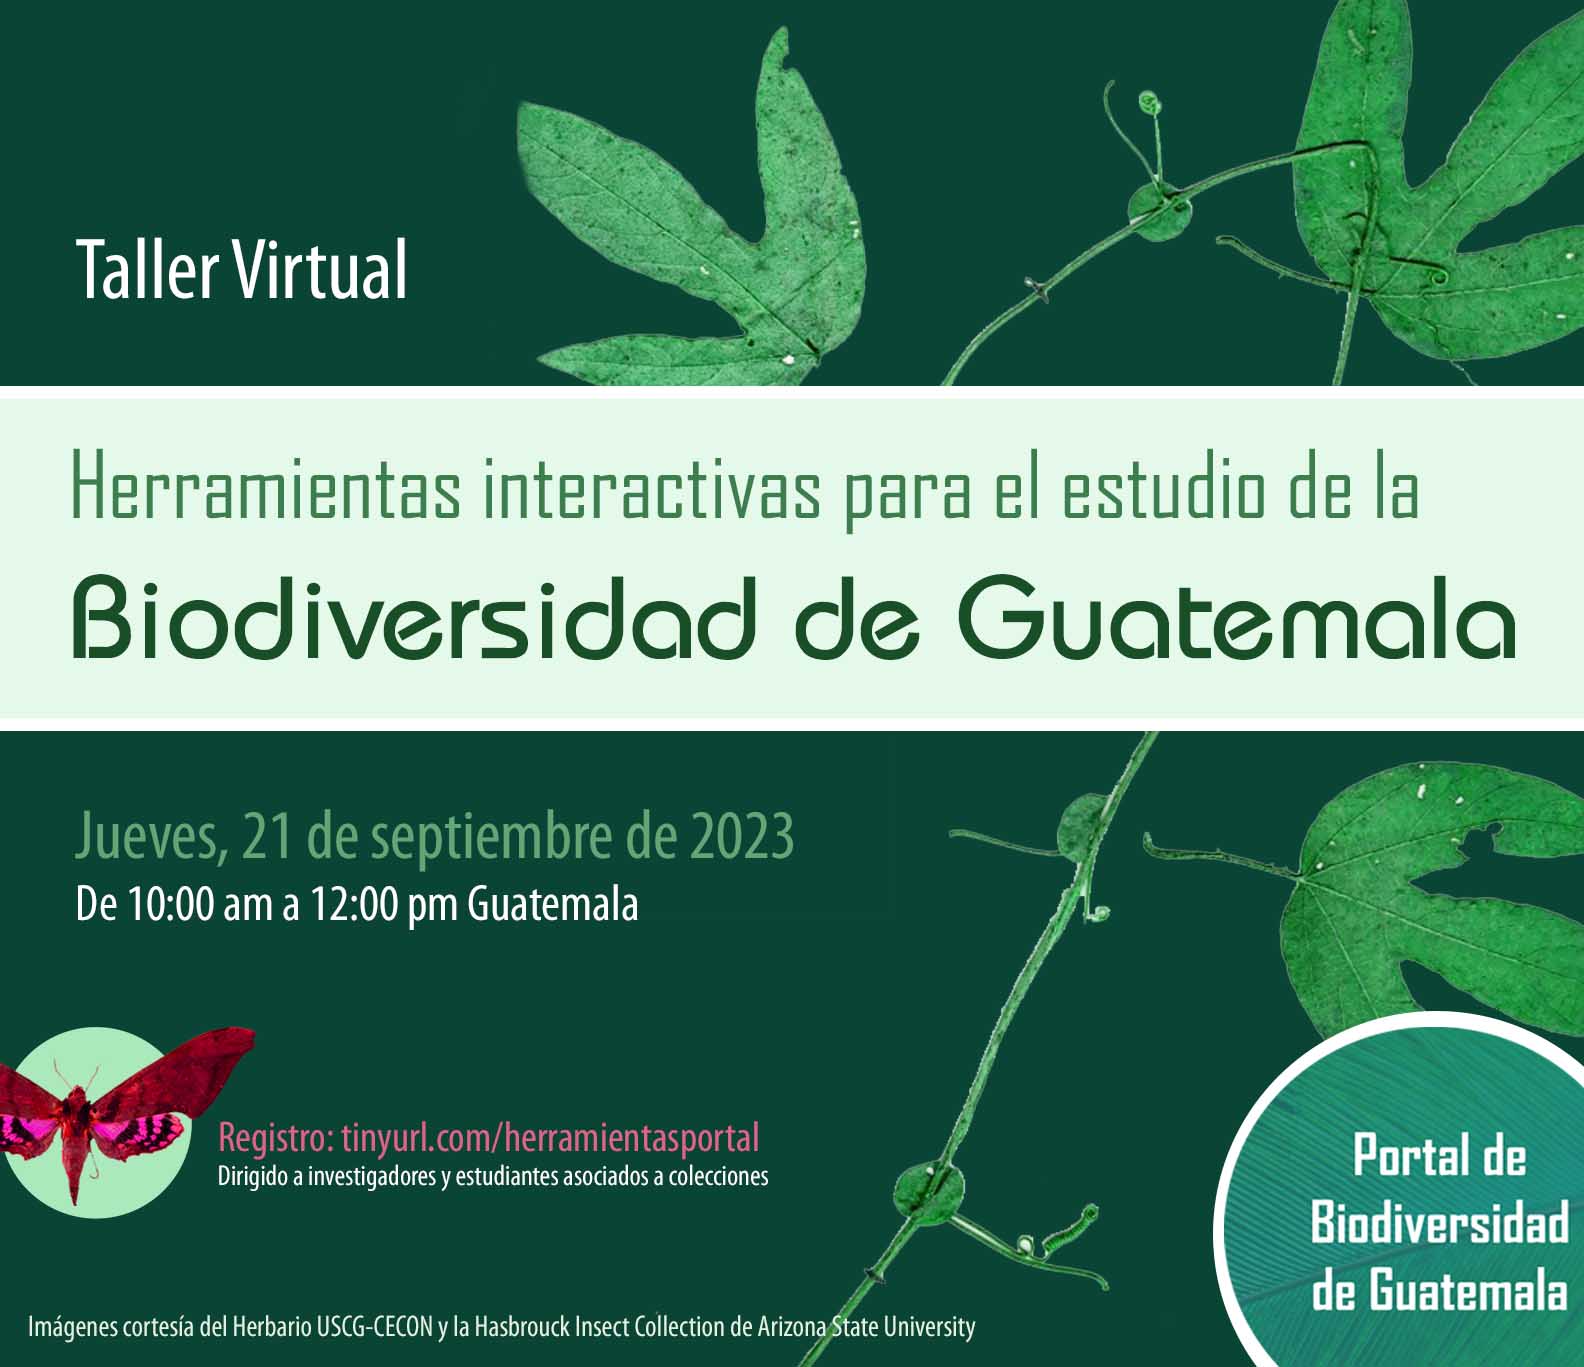 Herramientas interactivas para el estudio de la Biodiversidad de Guatemala